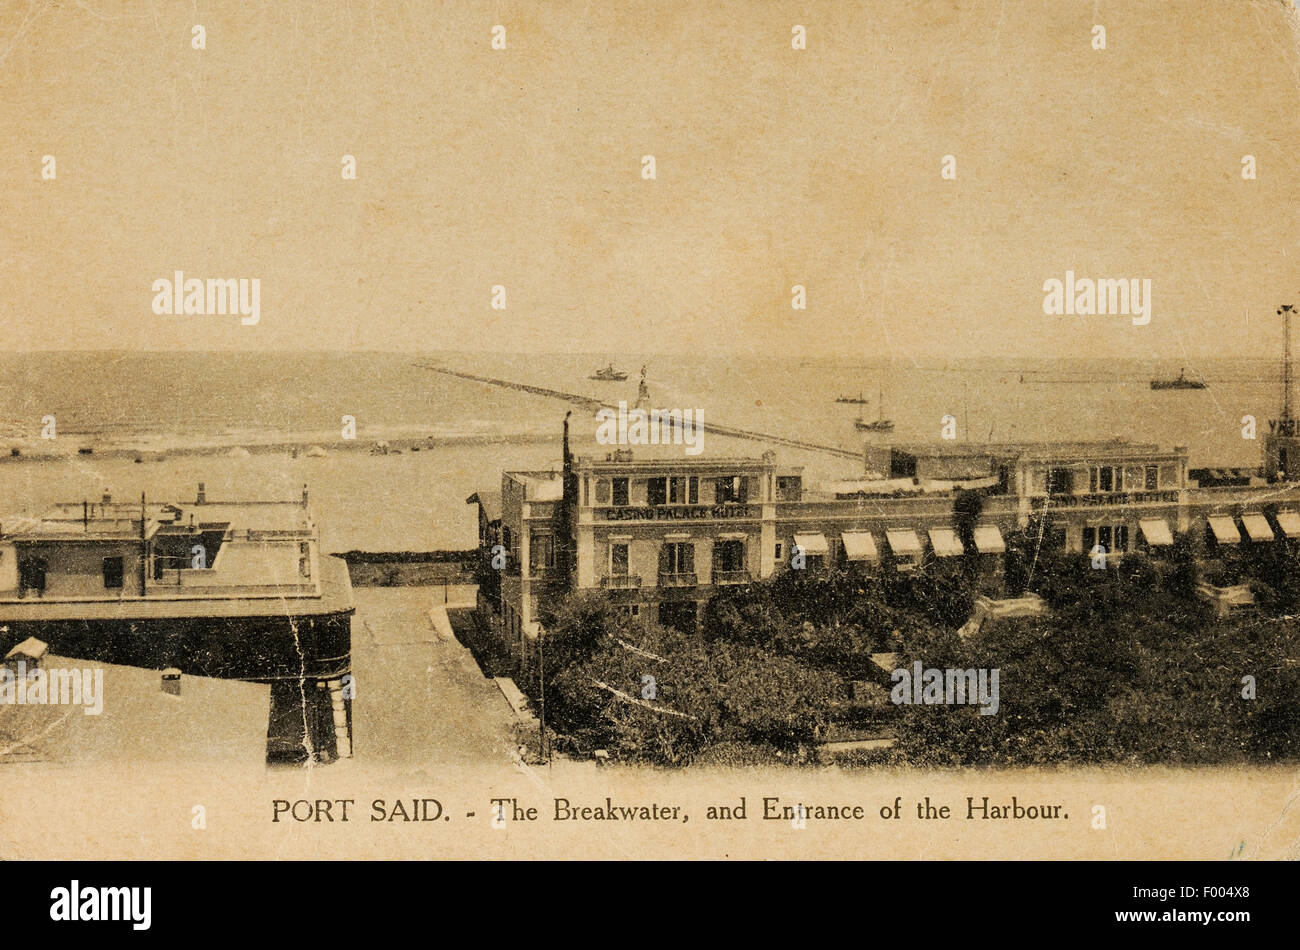 Port Said, Ägypten - 1900 s - eine Postkarte von der Suez-Kanal-Stadt an der Mündung des Suez-Kanals am Mittelmeer, ein Blick auf den Eingang zu den Suez-Kanal.   COPYRIGHT FOTOSAMMLUNG VON BARRY IVERSON Stockfoto